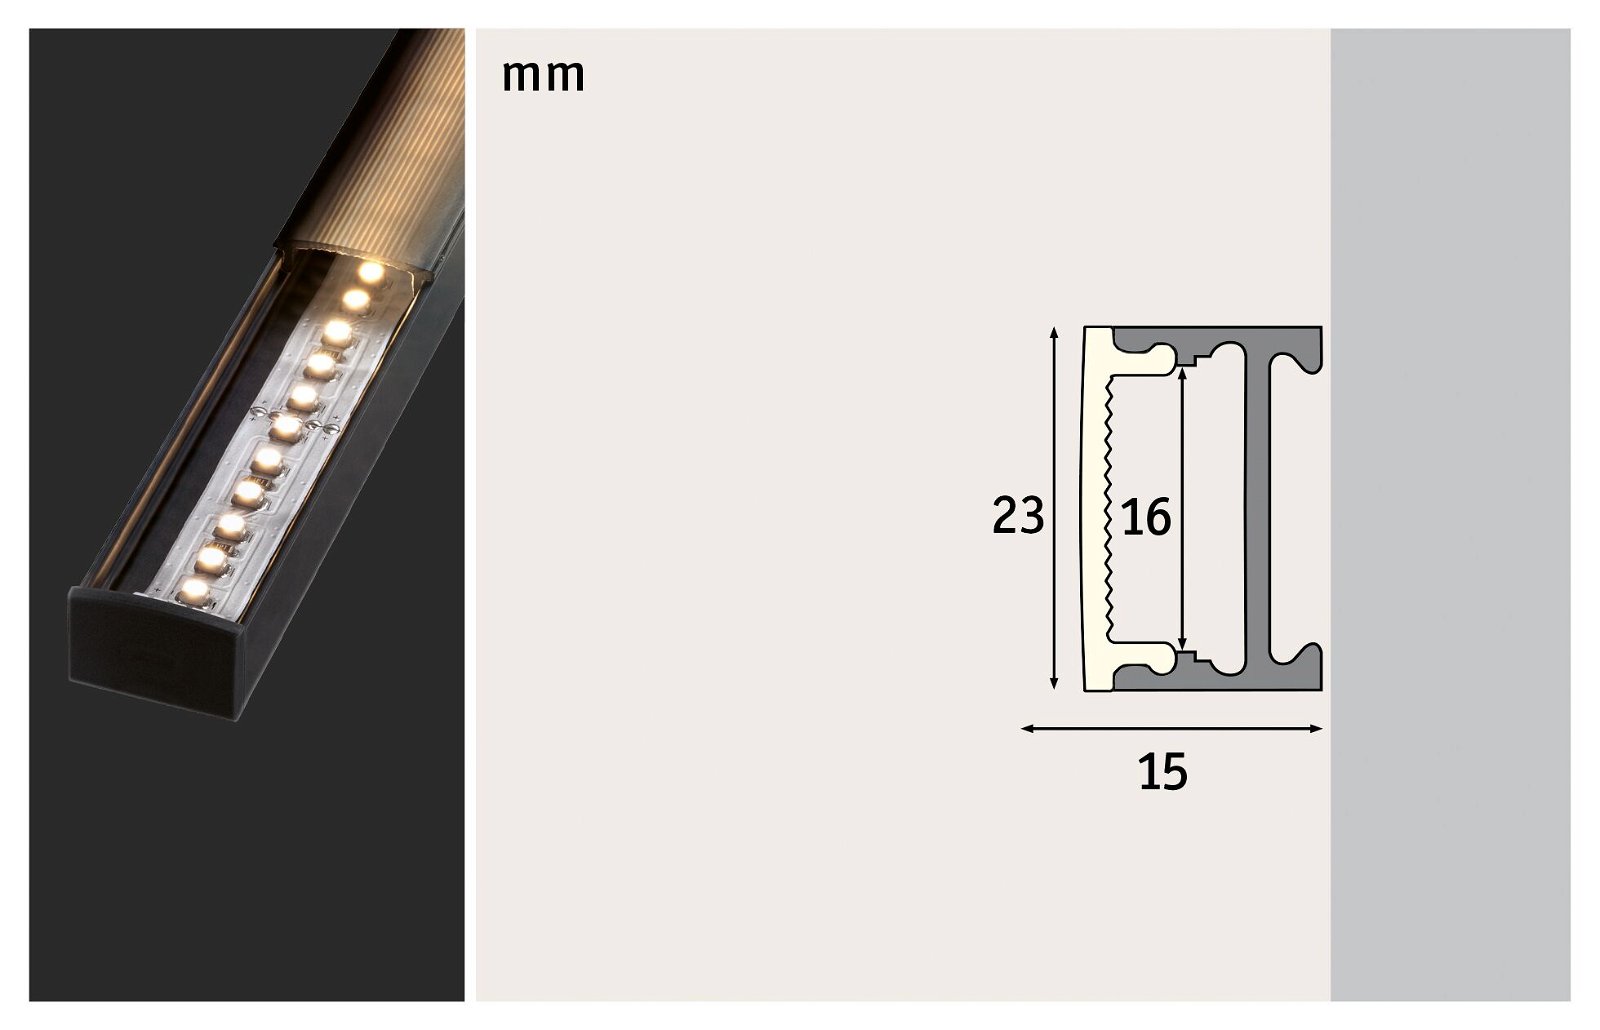 Profilé de strip LED Square 2m Noir